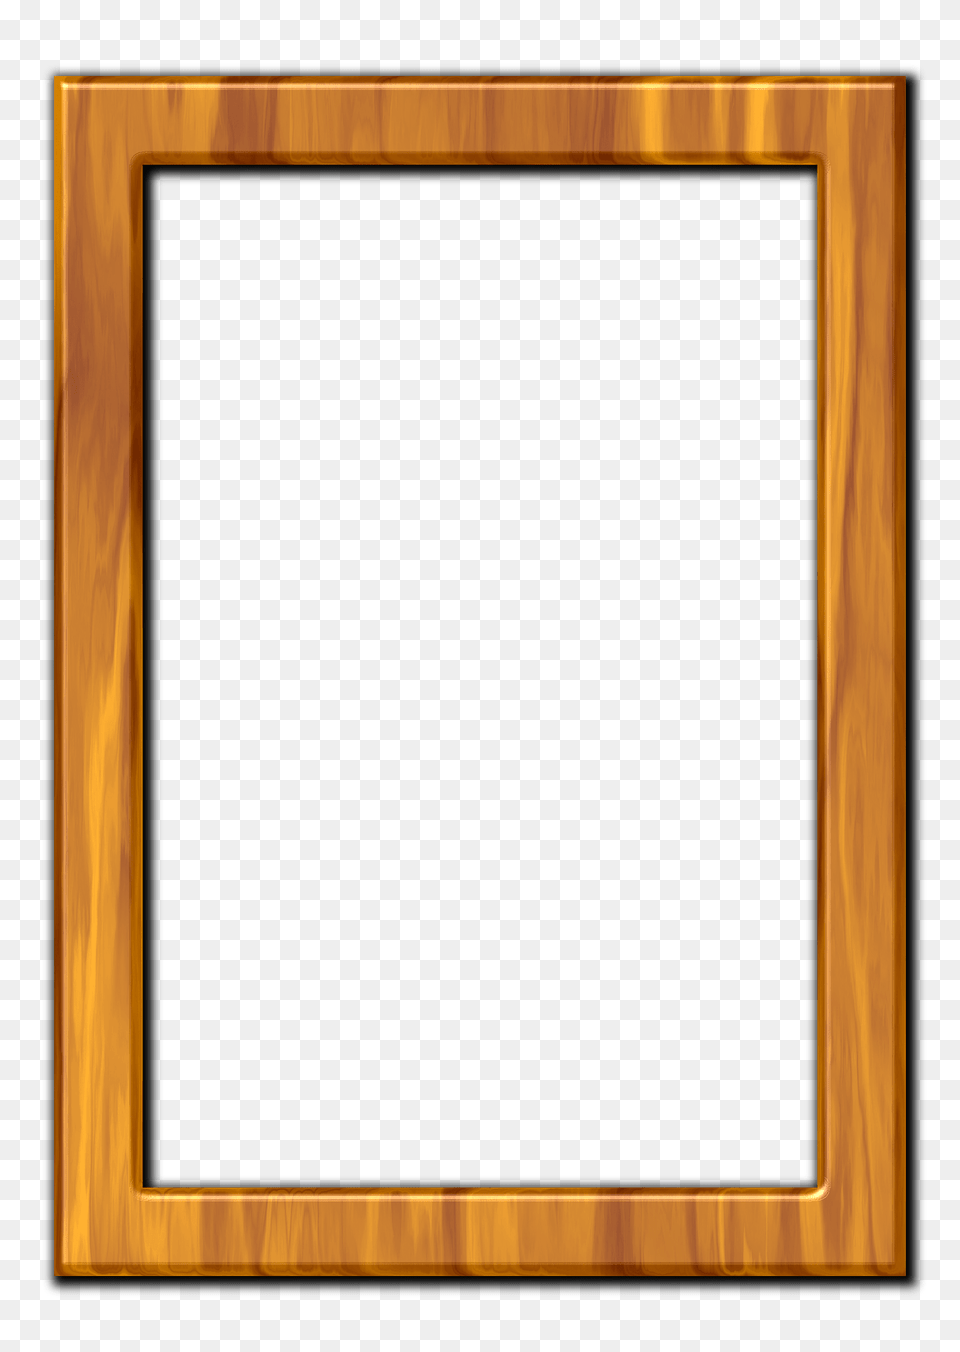 Frame Clipart, Blackboard, Wood Png Image